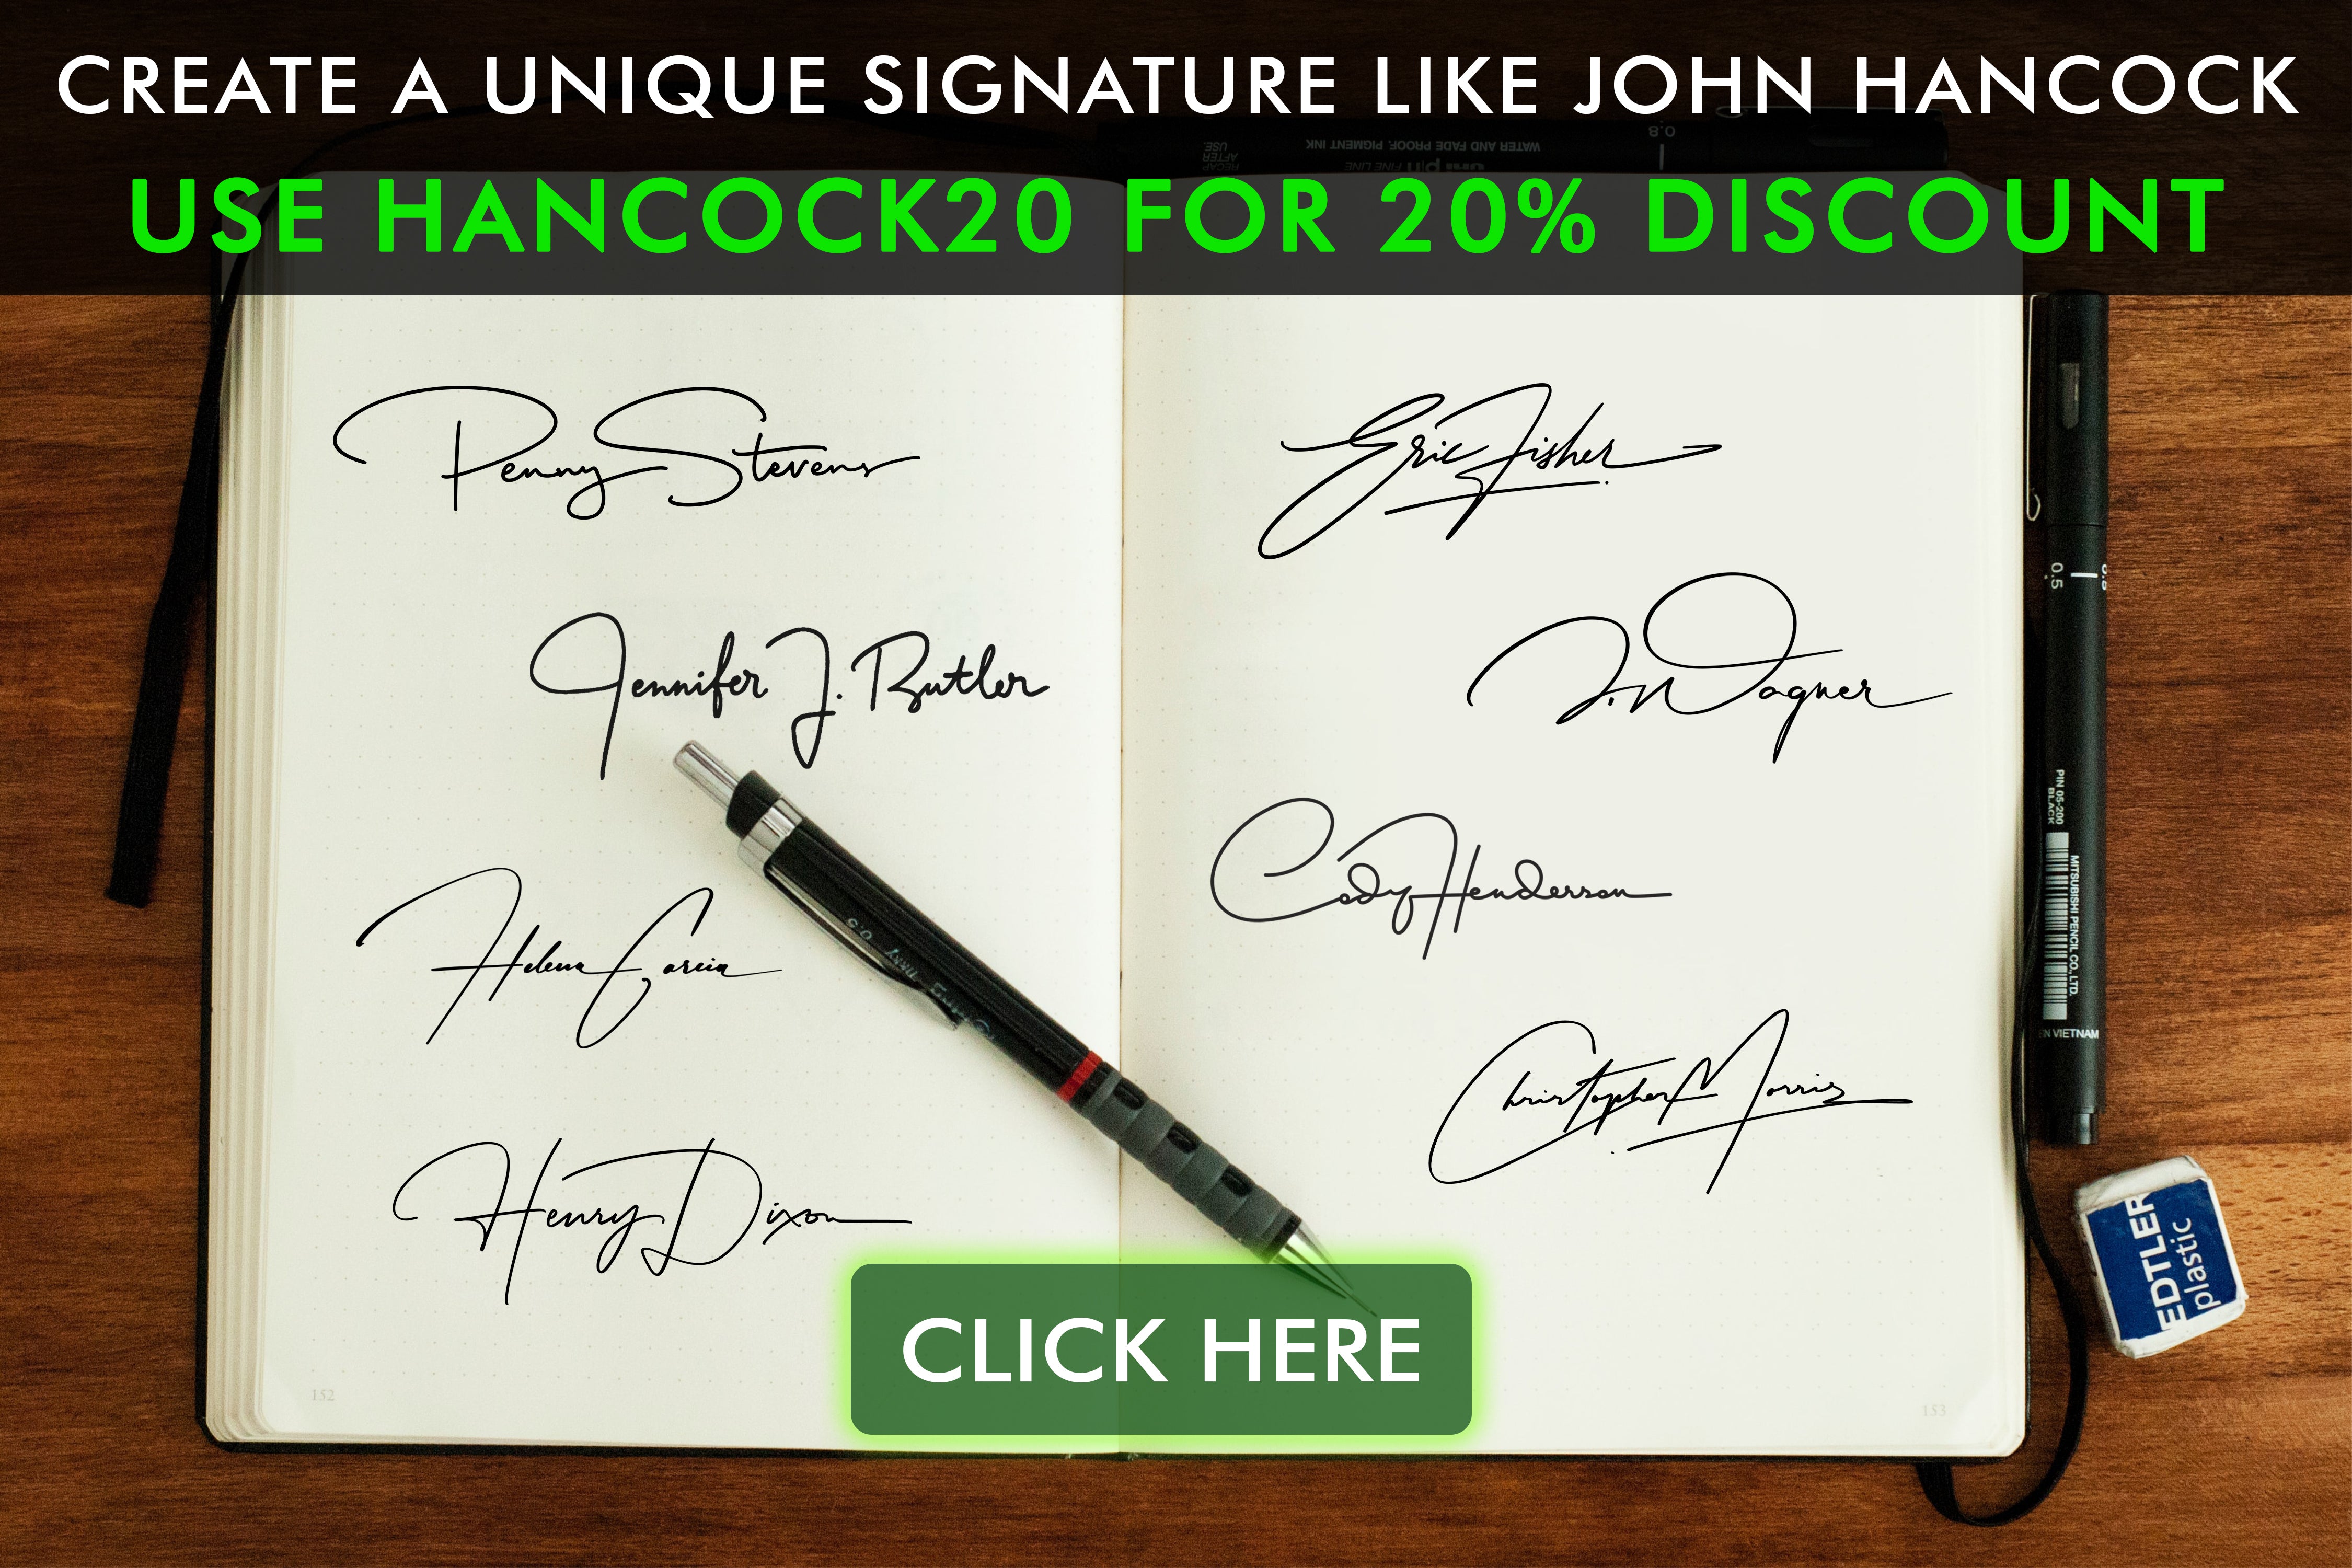 Descoperiți istoria semnăturii lui John Hancock și influența sa asupra istoriei. Citiți blogul nostru și vedeți colecția noastră inspirată de această semnătură iconică.